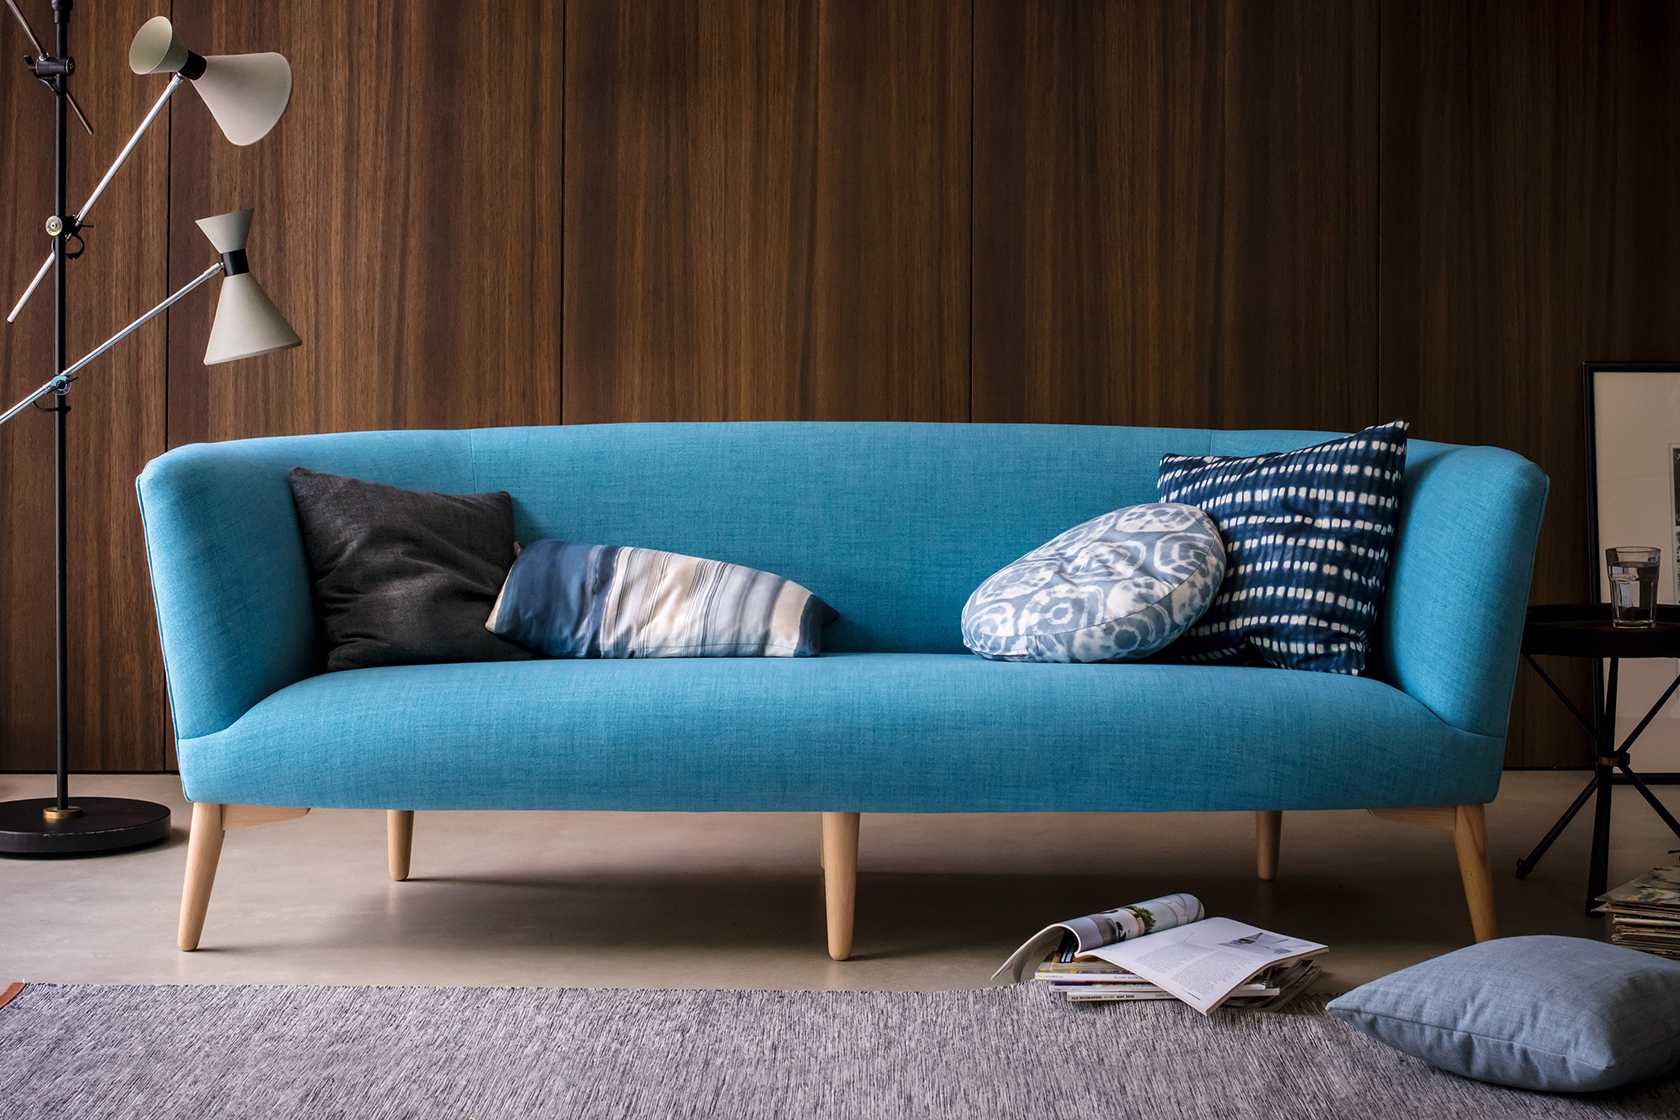 Диванчик в прихожую неотъемлемым предметом меблировки. как выбрать качественный диван? на что обращать внимание при покупке? какие фирмы рекомендуем? читаем, смотрим фото